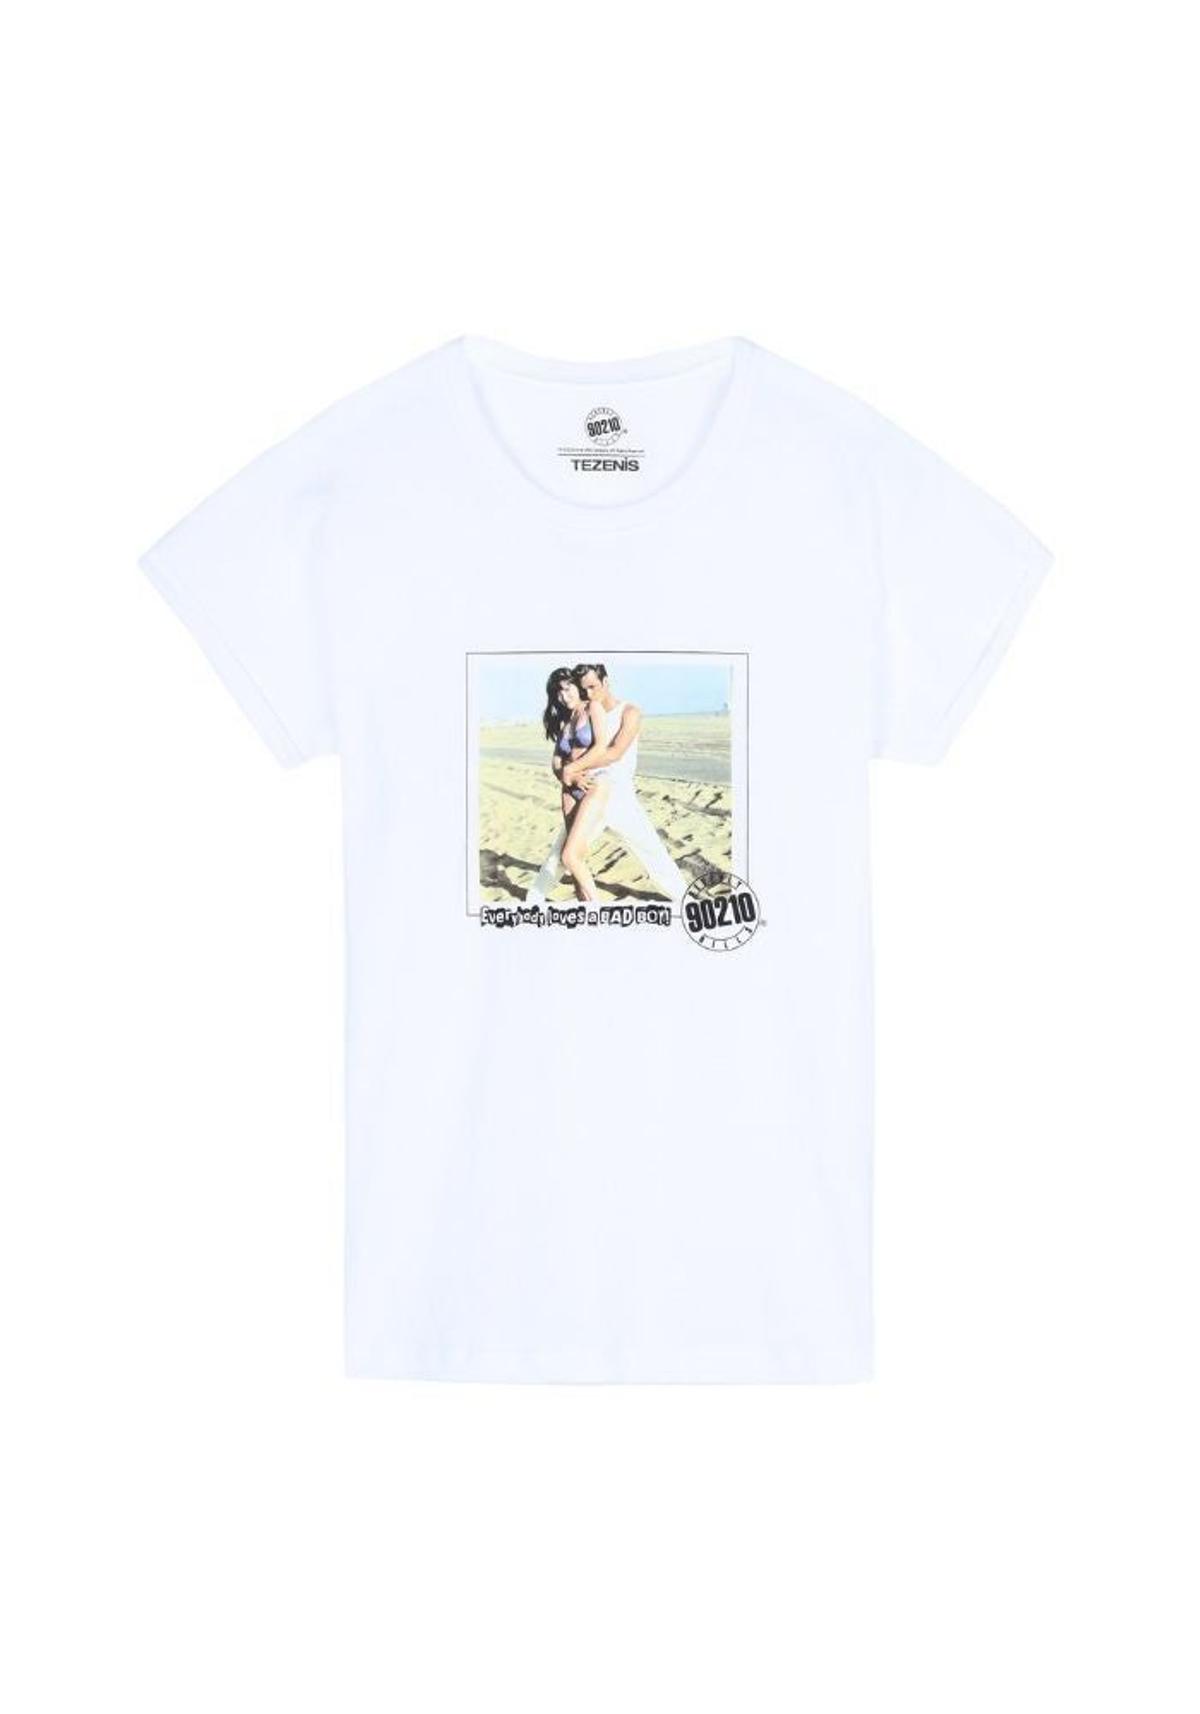 Camiseta Tezenis 'Beverly Hills 90210' (precio: 7,99€)